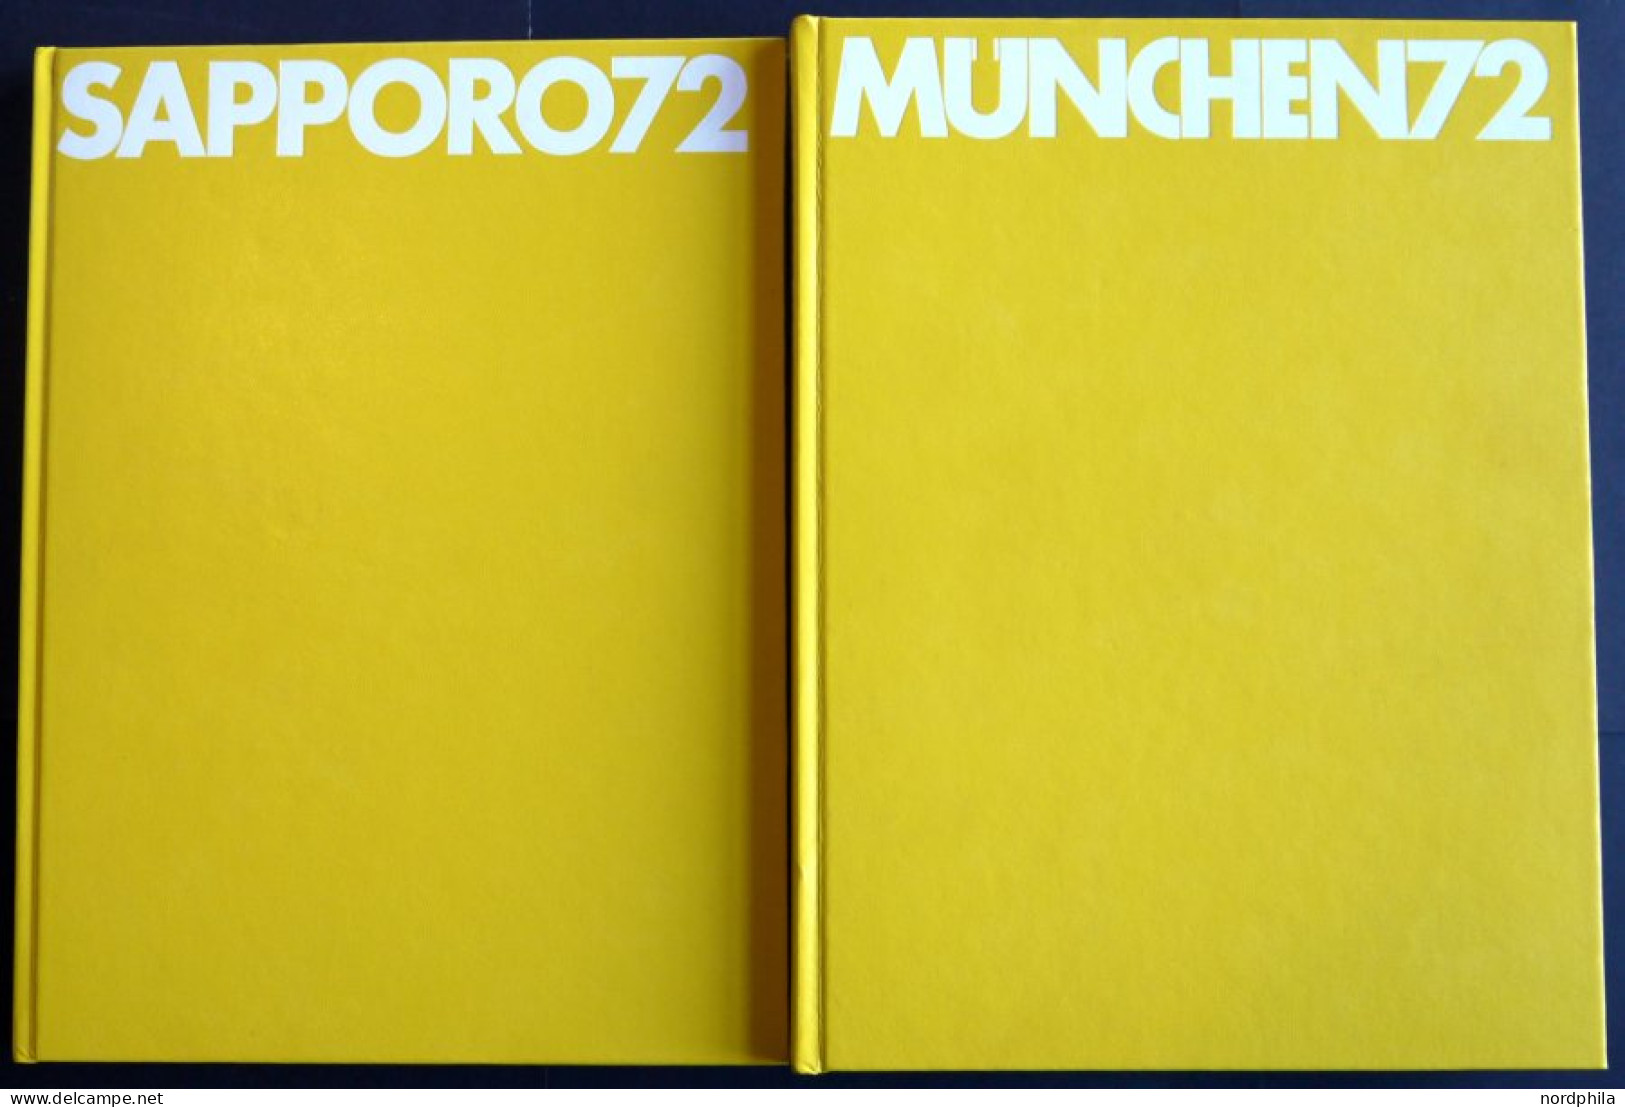 SACHBÜCHER München 72 Und Sapporo 72, 2 Illustrierte Bücher Im Karton, Herausgegeben Von Der OSB-Olympische Sport Biblio - Autres & Non Classés